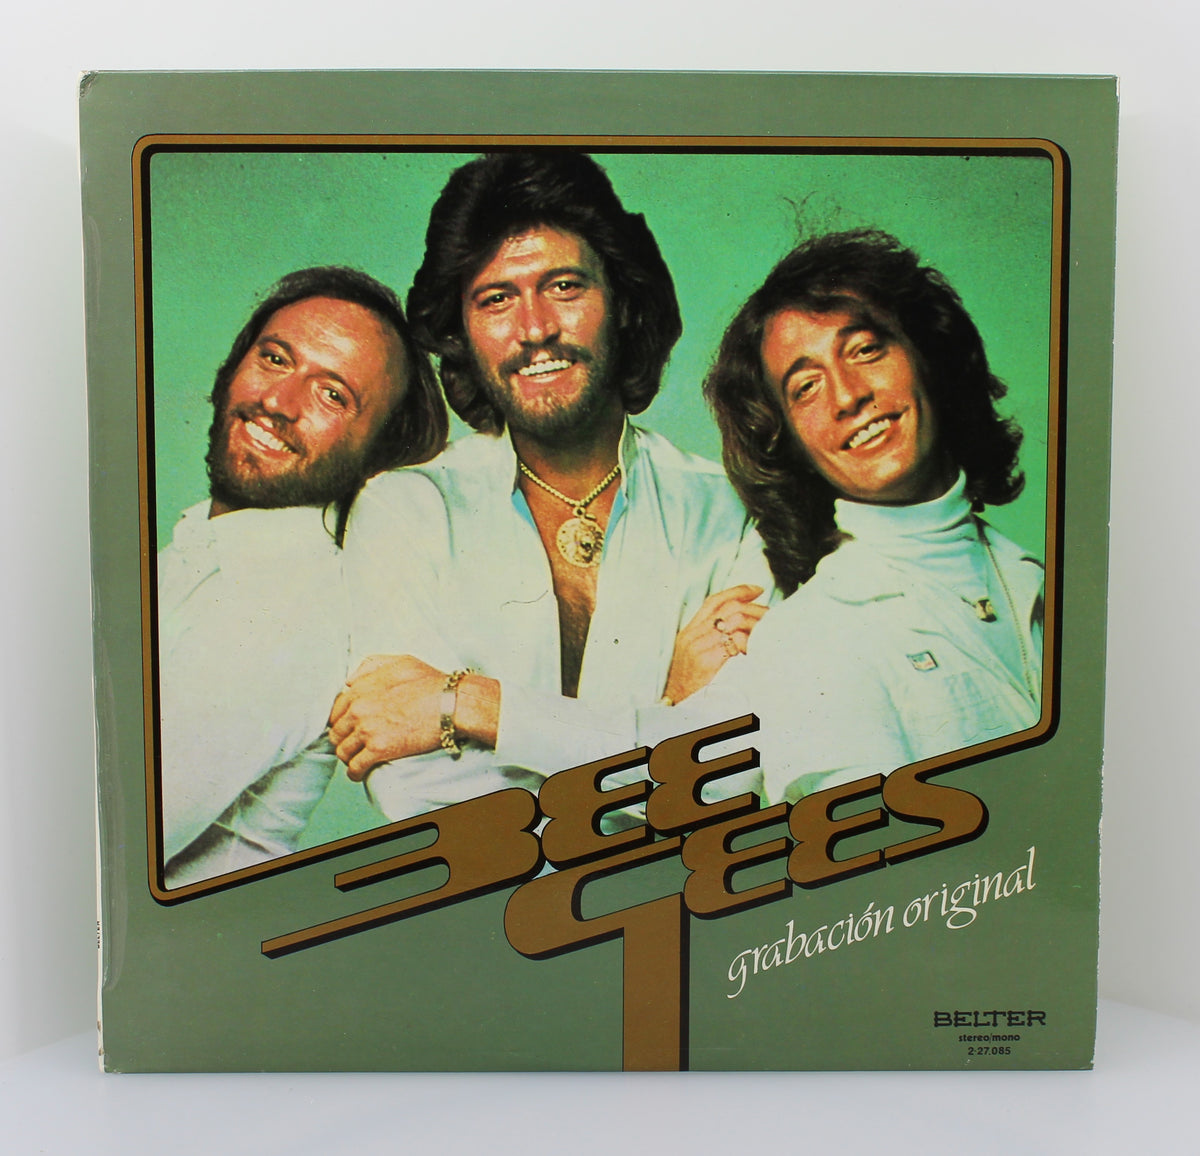 Bee Gees – Bee Gees, Vinyl, LP, Compilation, Spain 1979